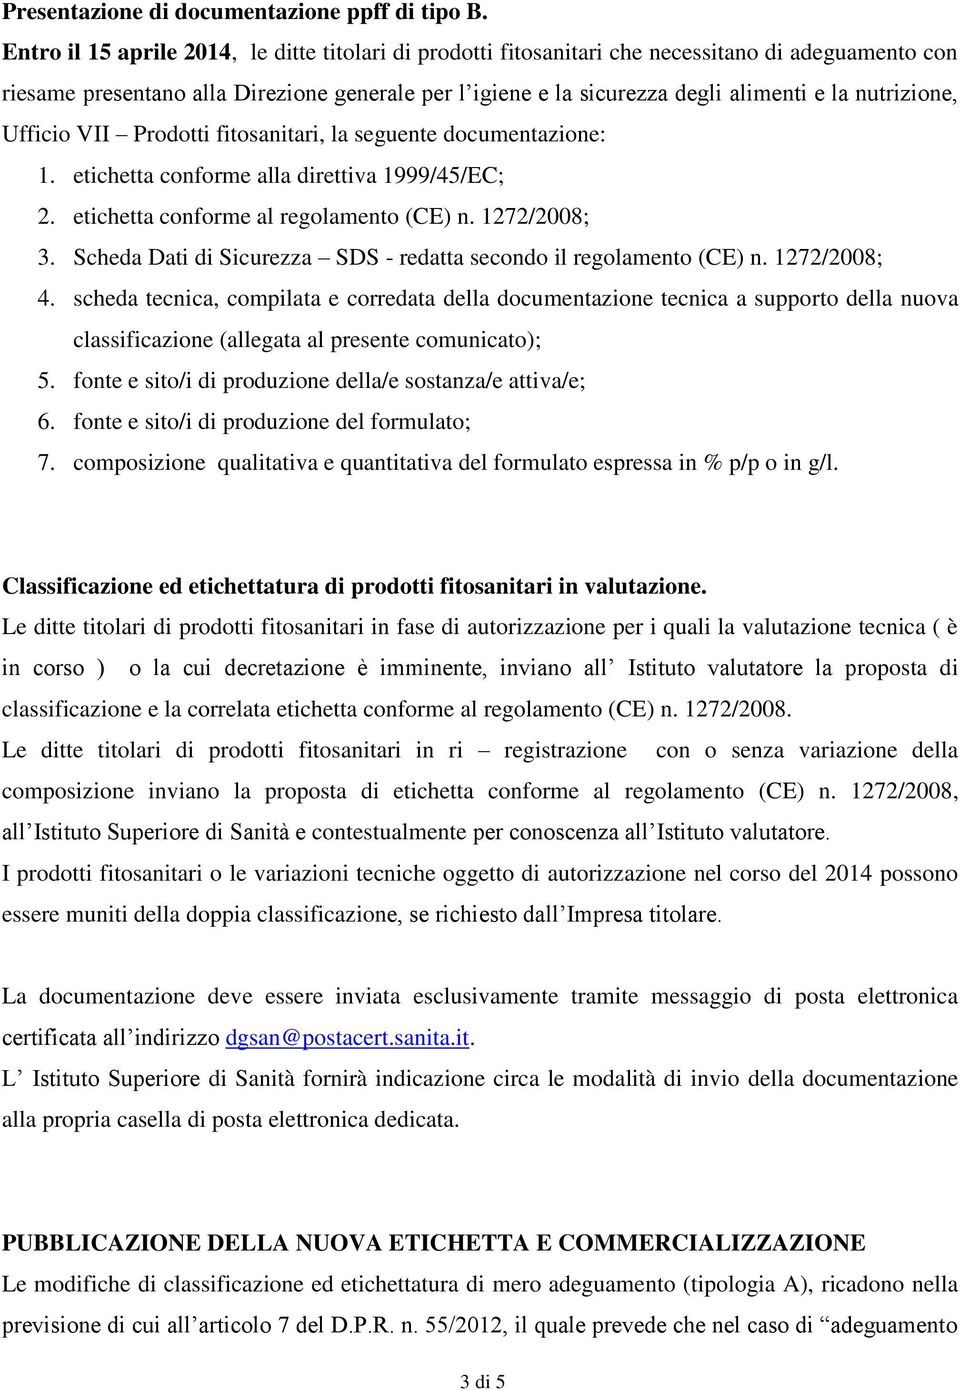 nutrizione, Ufficio VII Prodotti fitosanitari, la seguente documentazione: 1. etichetta conforme alla direttiva 1999/45/EC; 2. etichetta conforme al regolamento (CE) n. 1272/2008; 3.